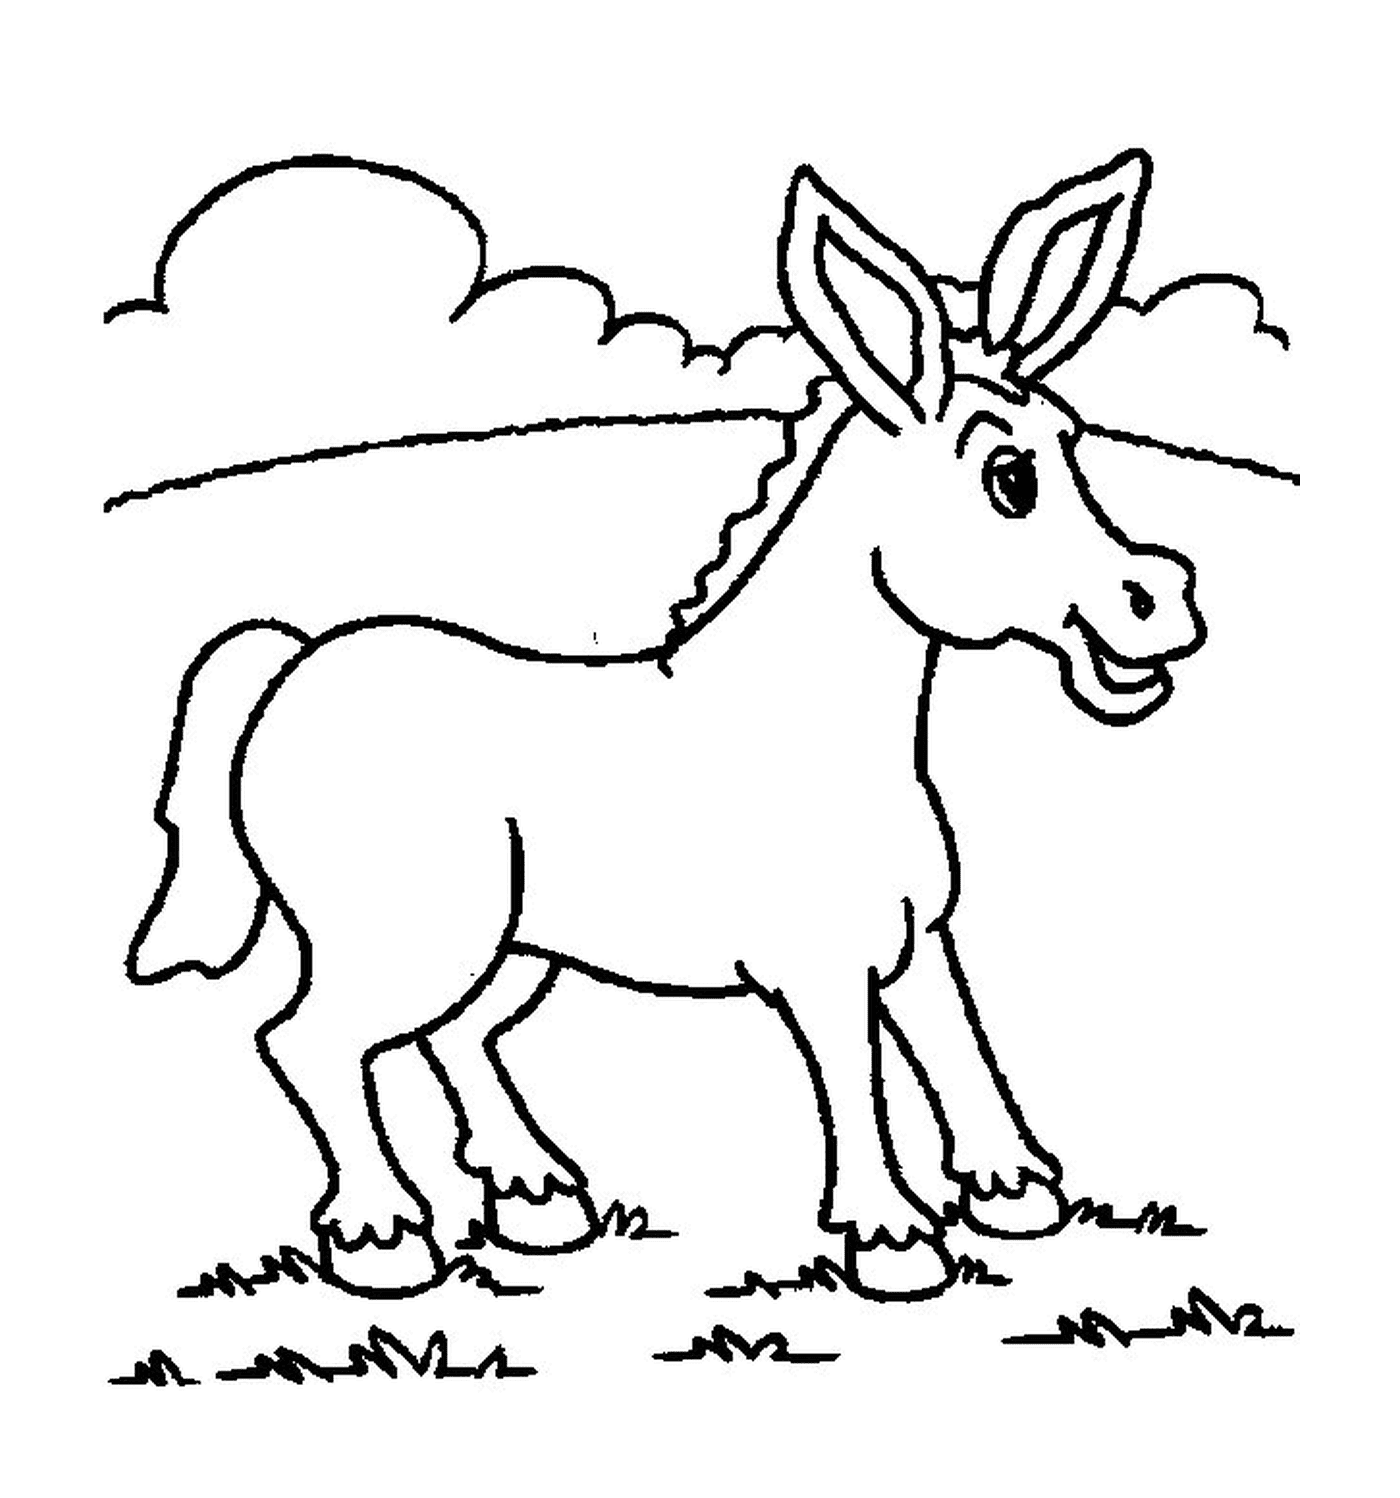  Uma imagem de um burro 